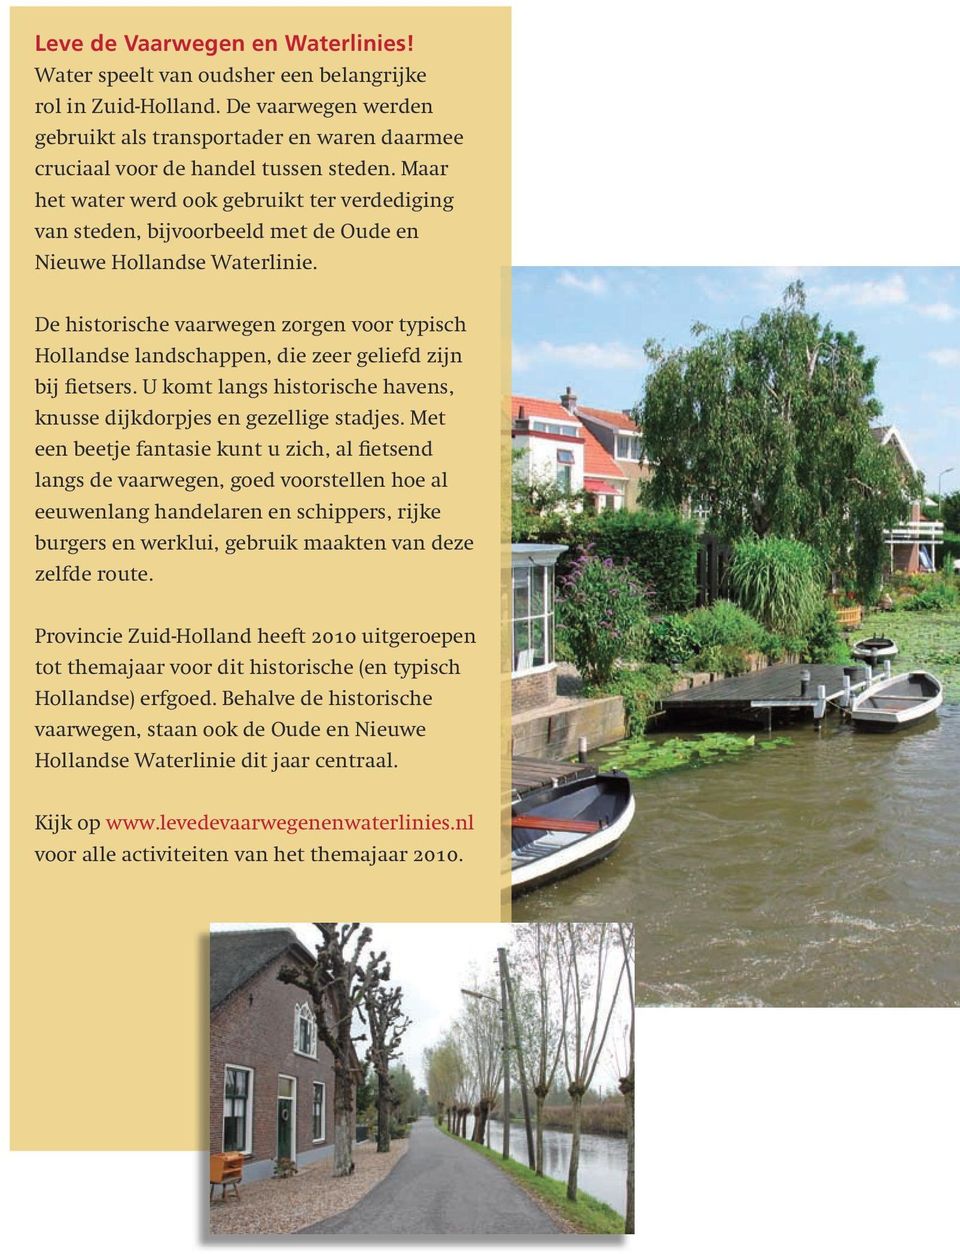 De historische vaarwegen zorgen voor typisch Hollandse landschappen, die zeer geliefd zijn bij fietsers. U komt langs historische havens, knusse dijk dorpjes en gezellige stadjes.